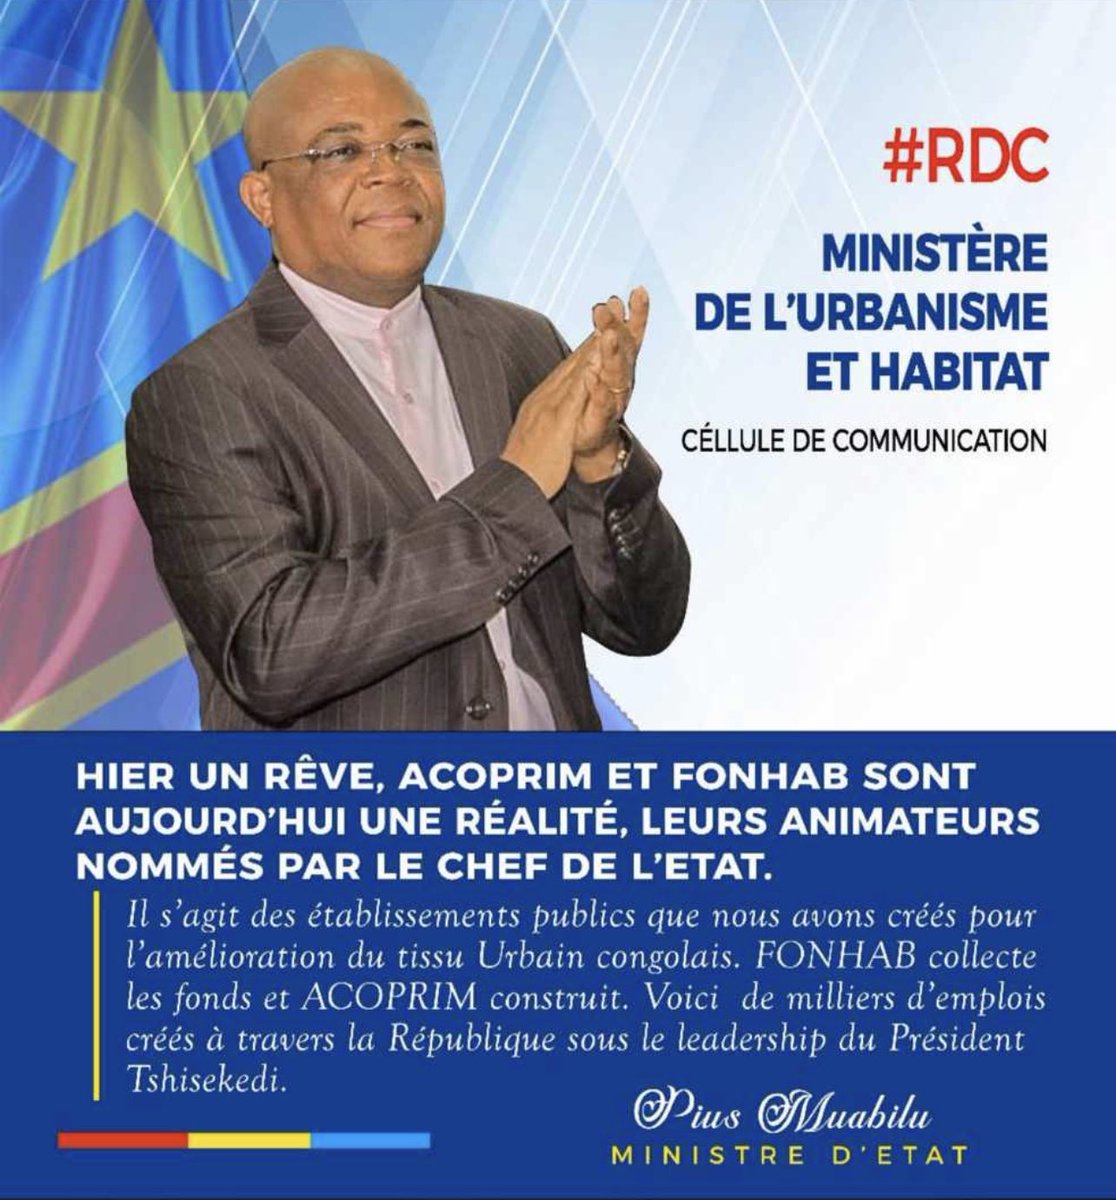 Hier un rêve, ACOPRIM et FONHAB sont aujourd’hui une réalité. #PMMM #RDC